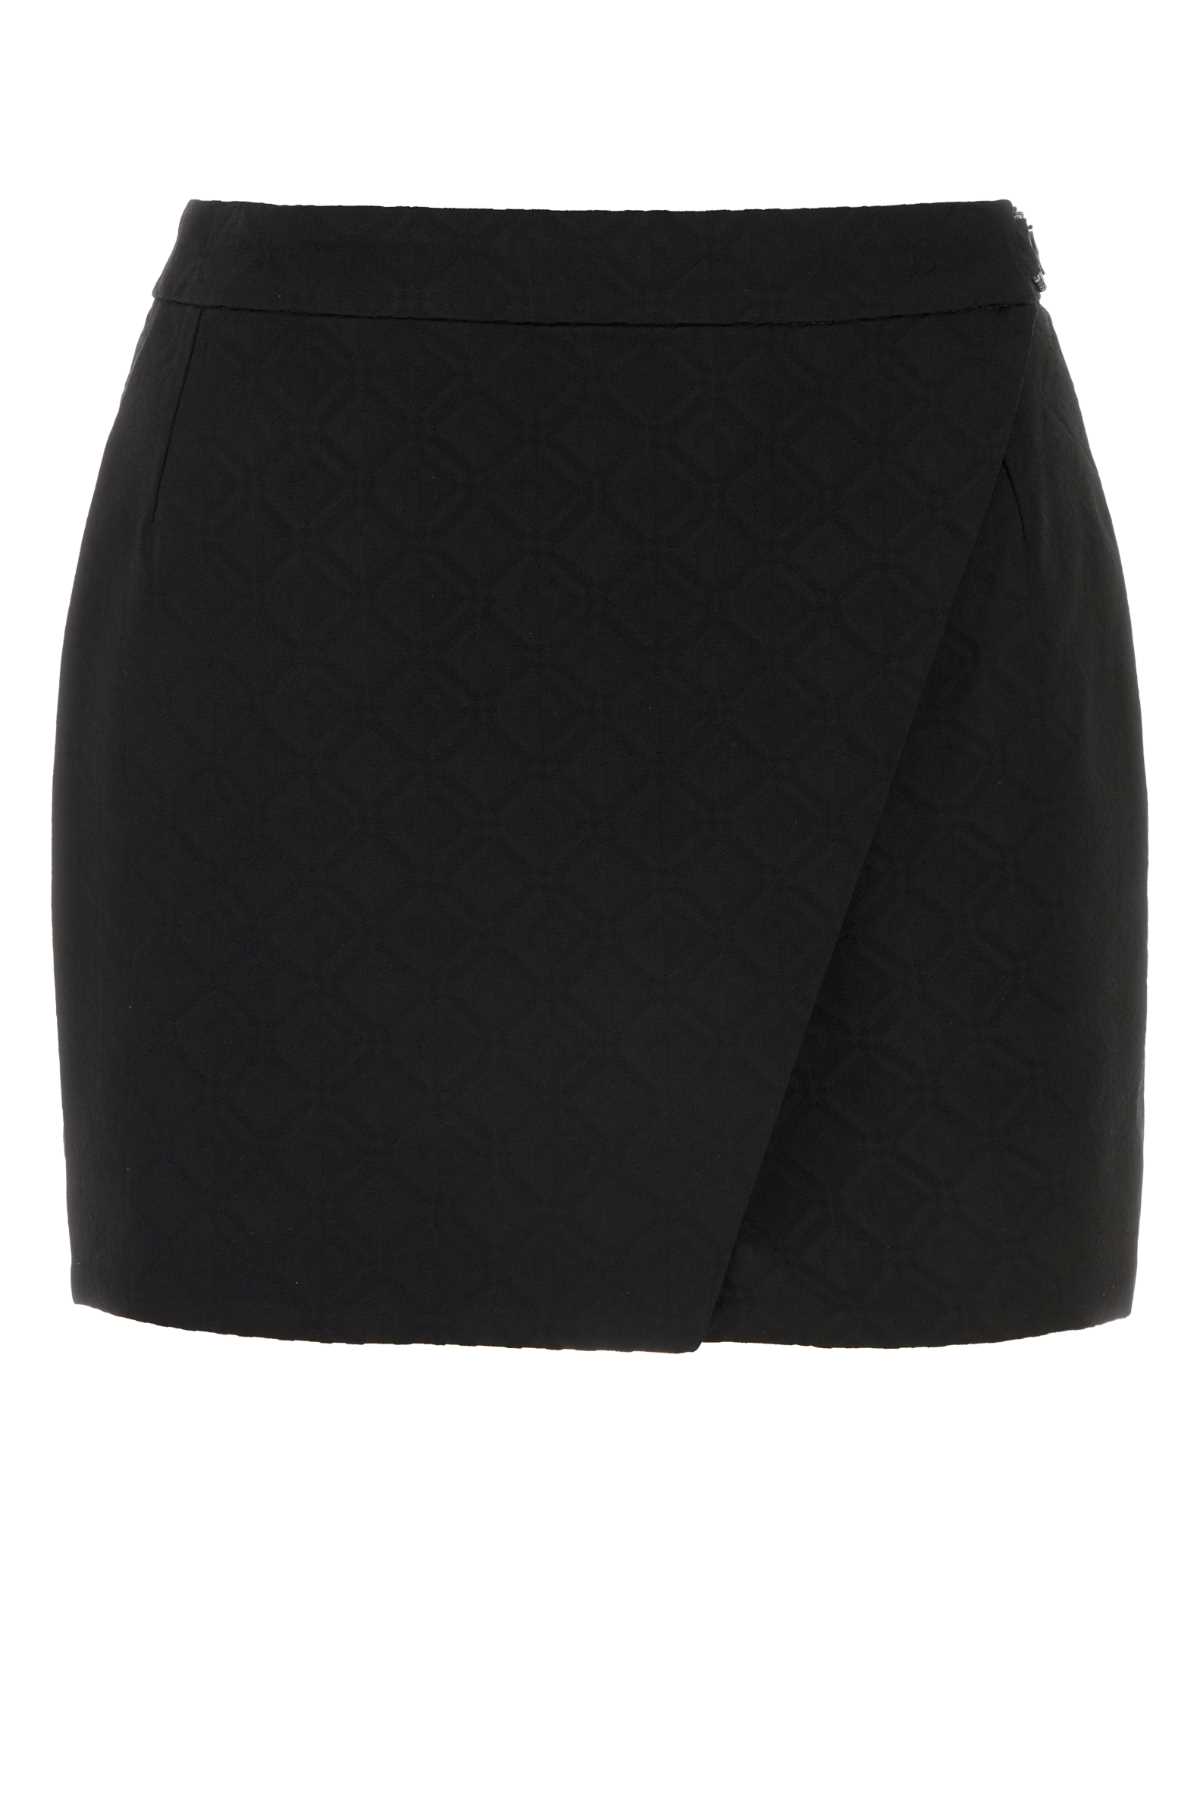 Black Stretch Viscose Blend Mini Skirt